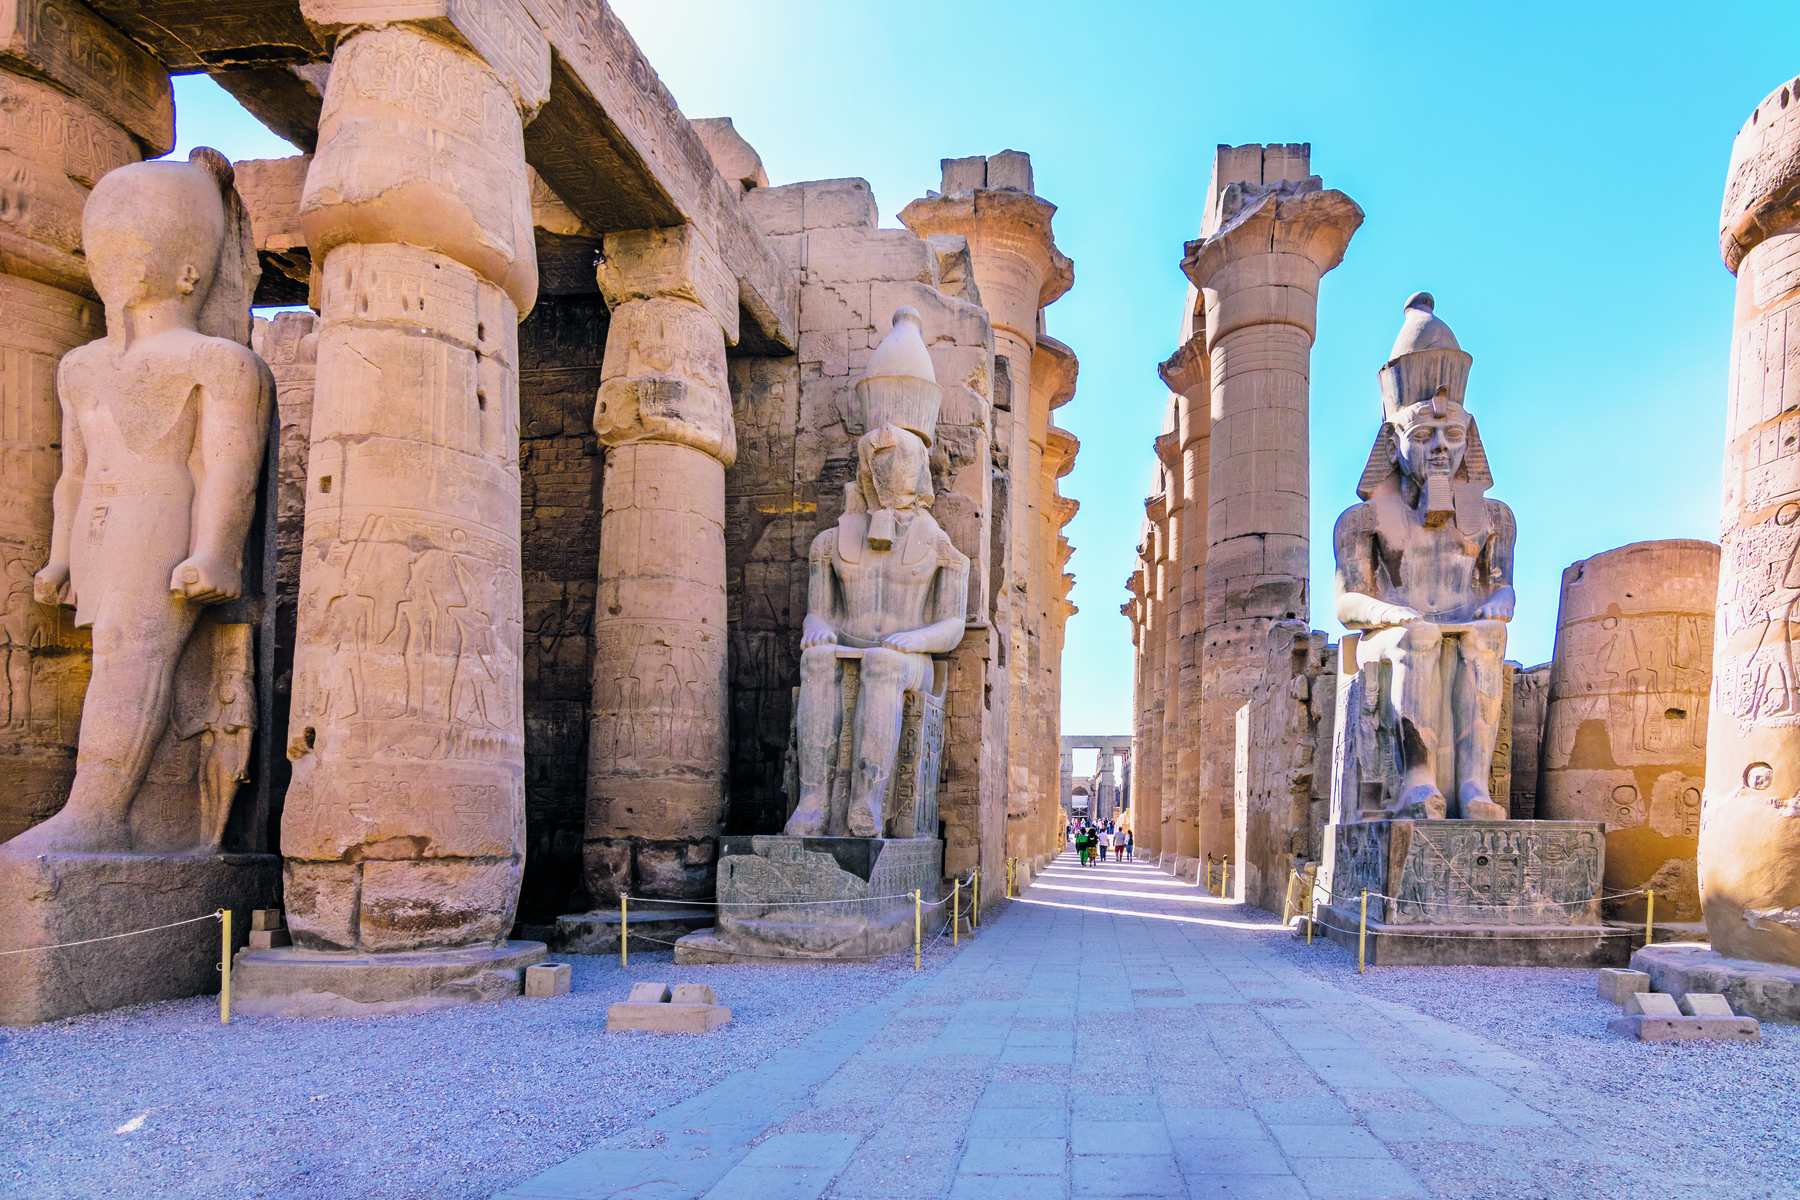 Fotografia. Vista das ruínas de um templo, com grossas colunas circulares e estátuas representando homens sentados sobre tronos.